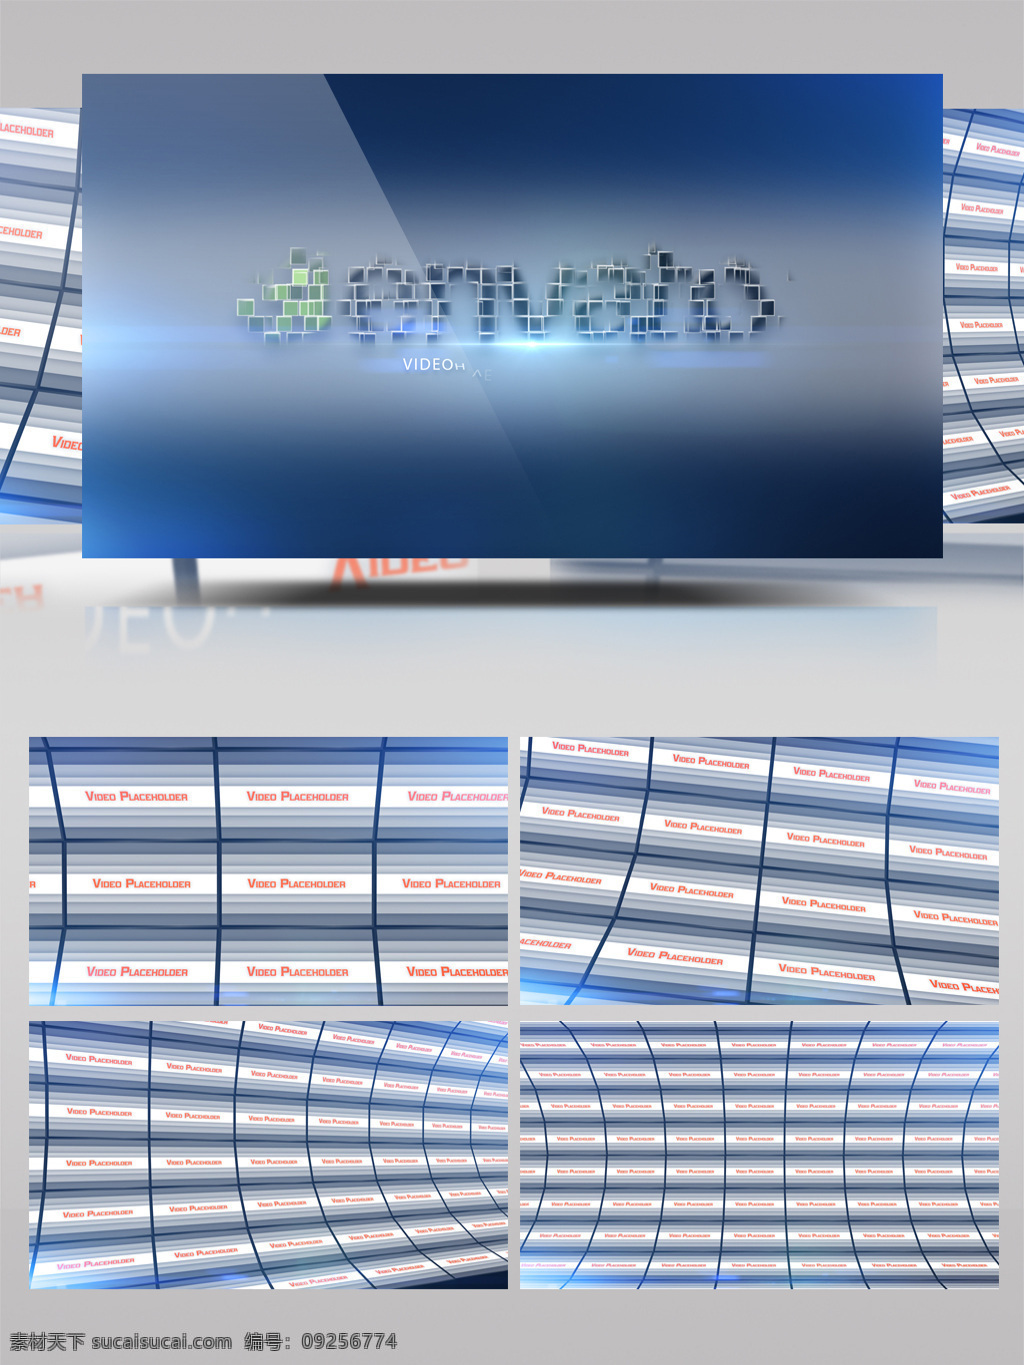 震撼 3d 效果 led 视频 屏幕 展示 墙 ae 模板 弧形 科幻 未来 相册 视频墙 巨幕